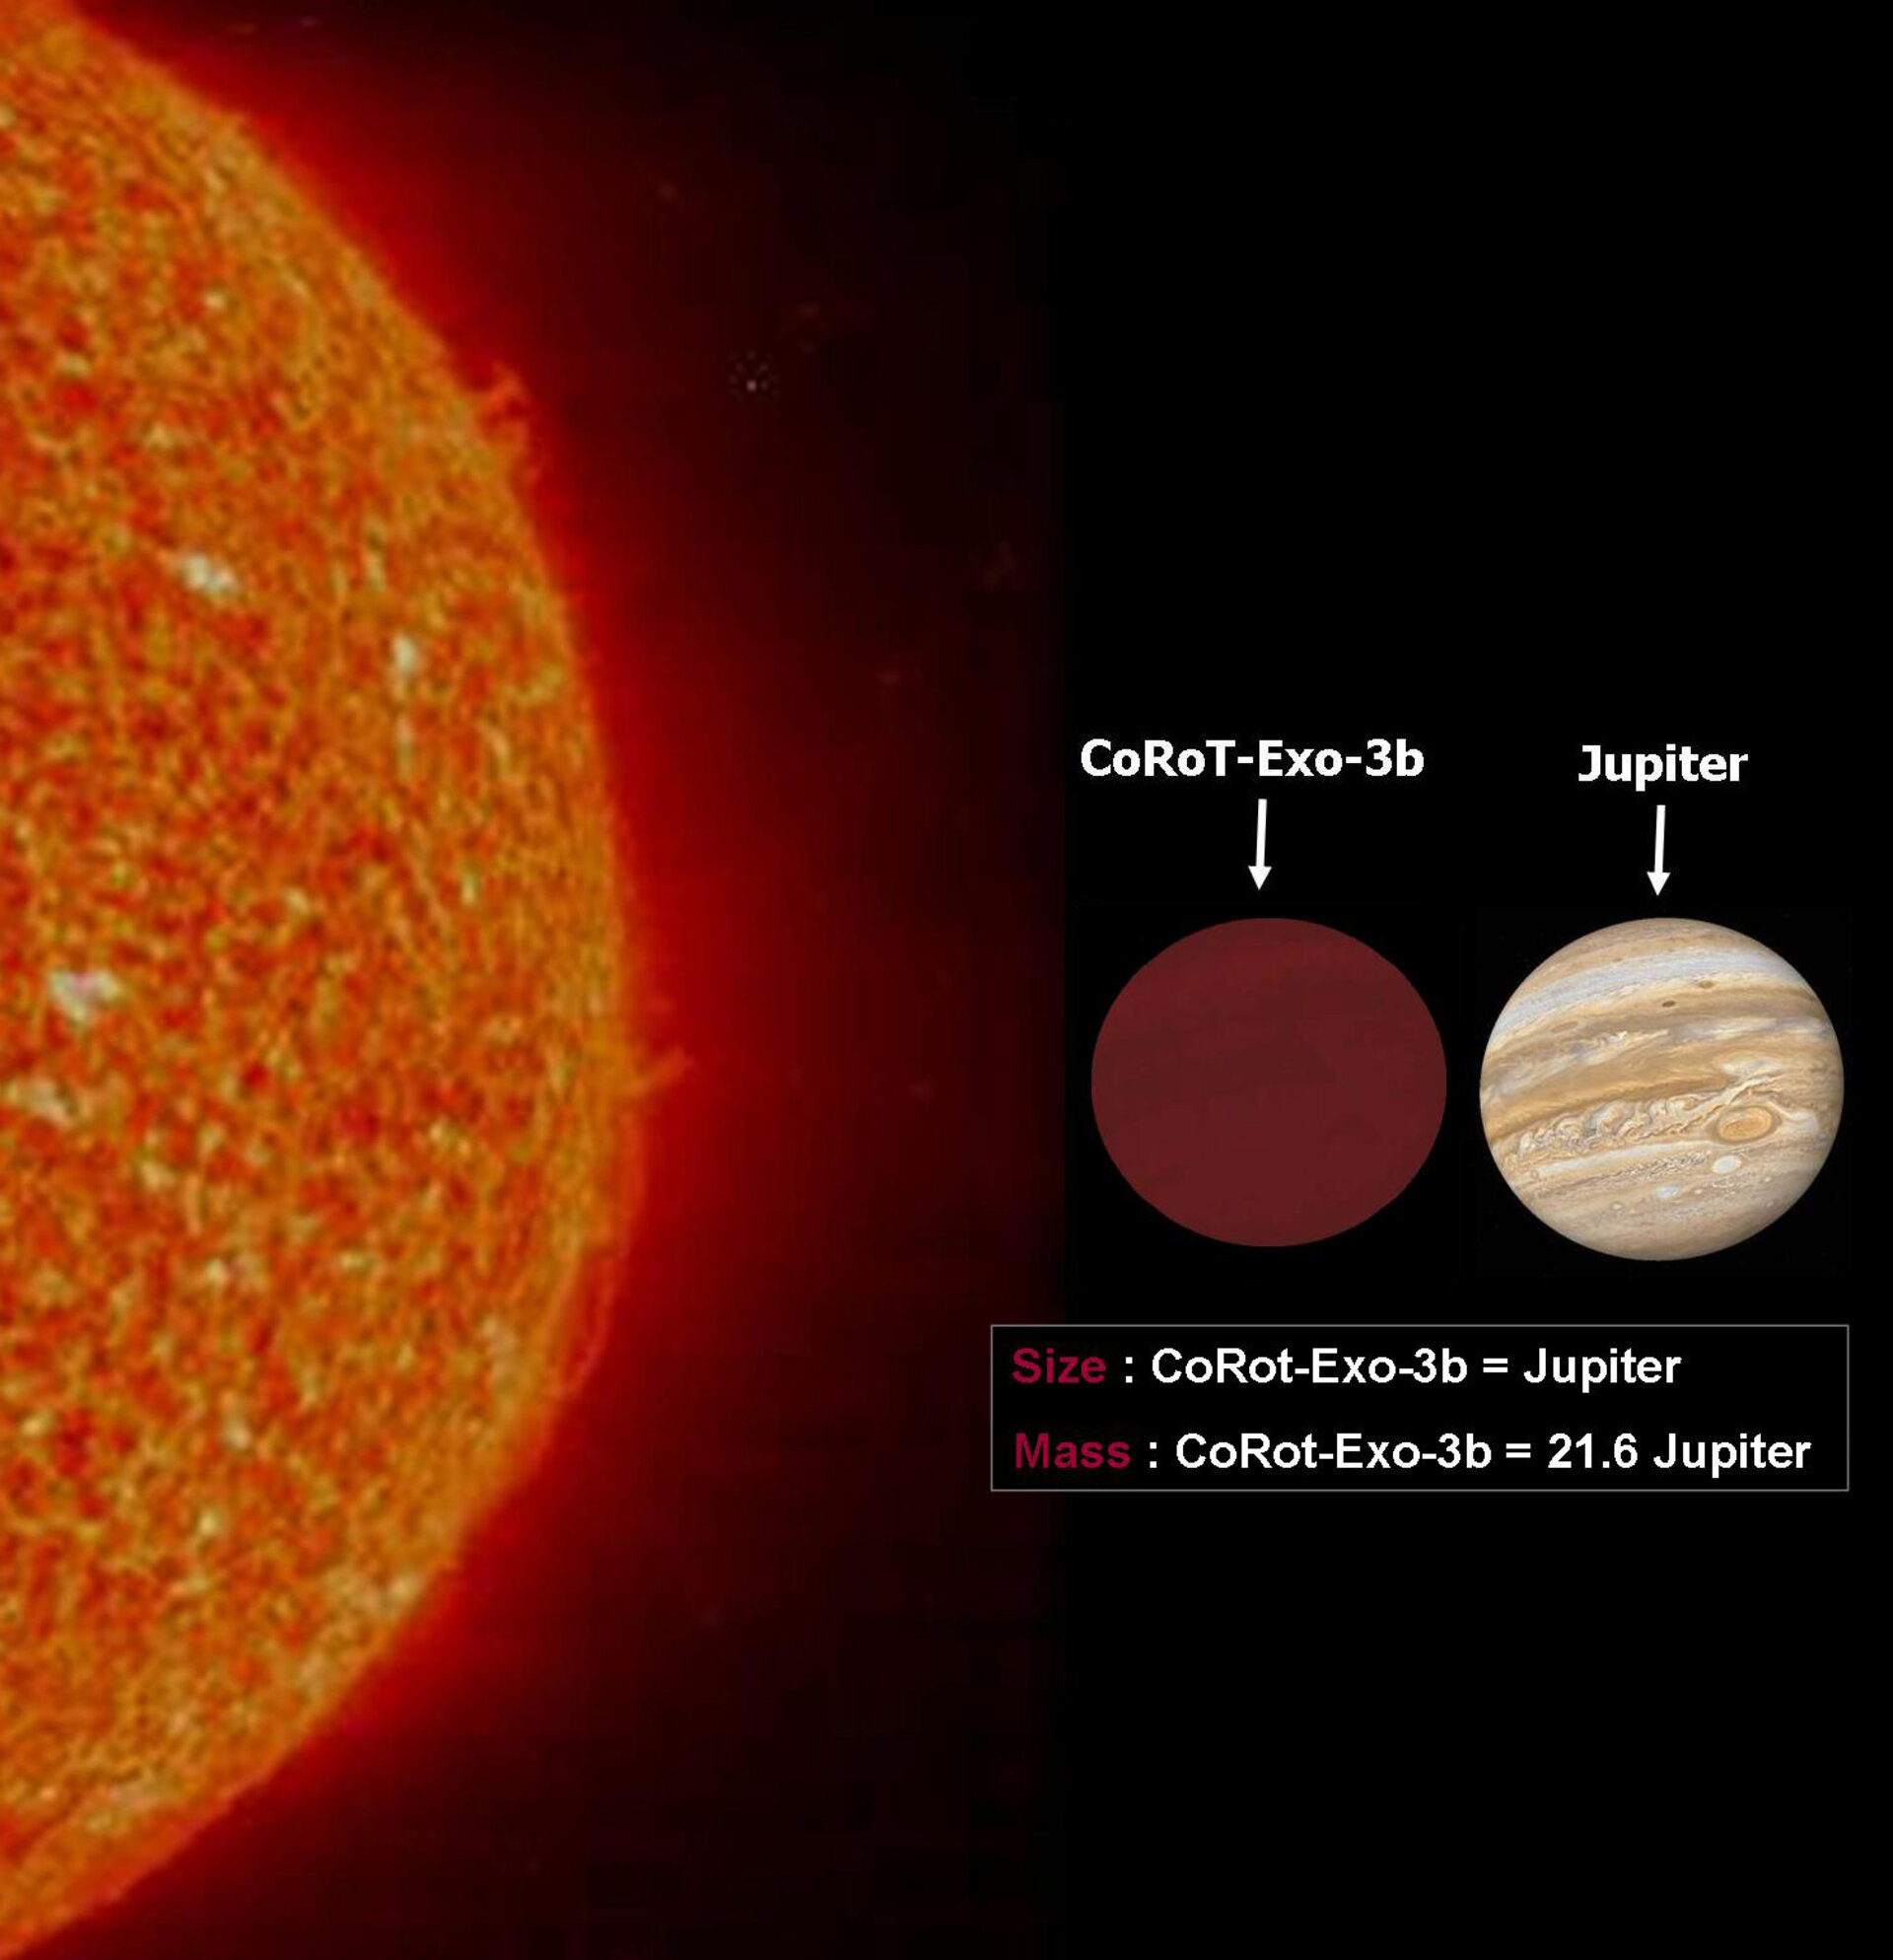 Sammenlikning av størrelsen mellom vår sol, COROT-exo-3b og Jupiter.